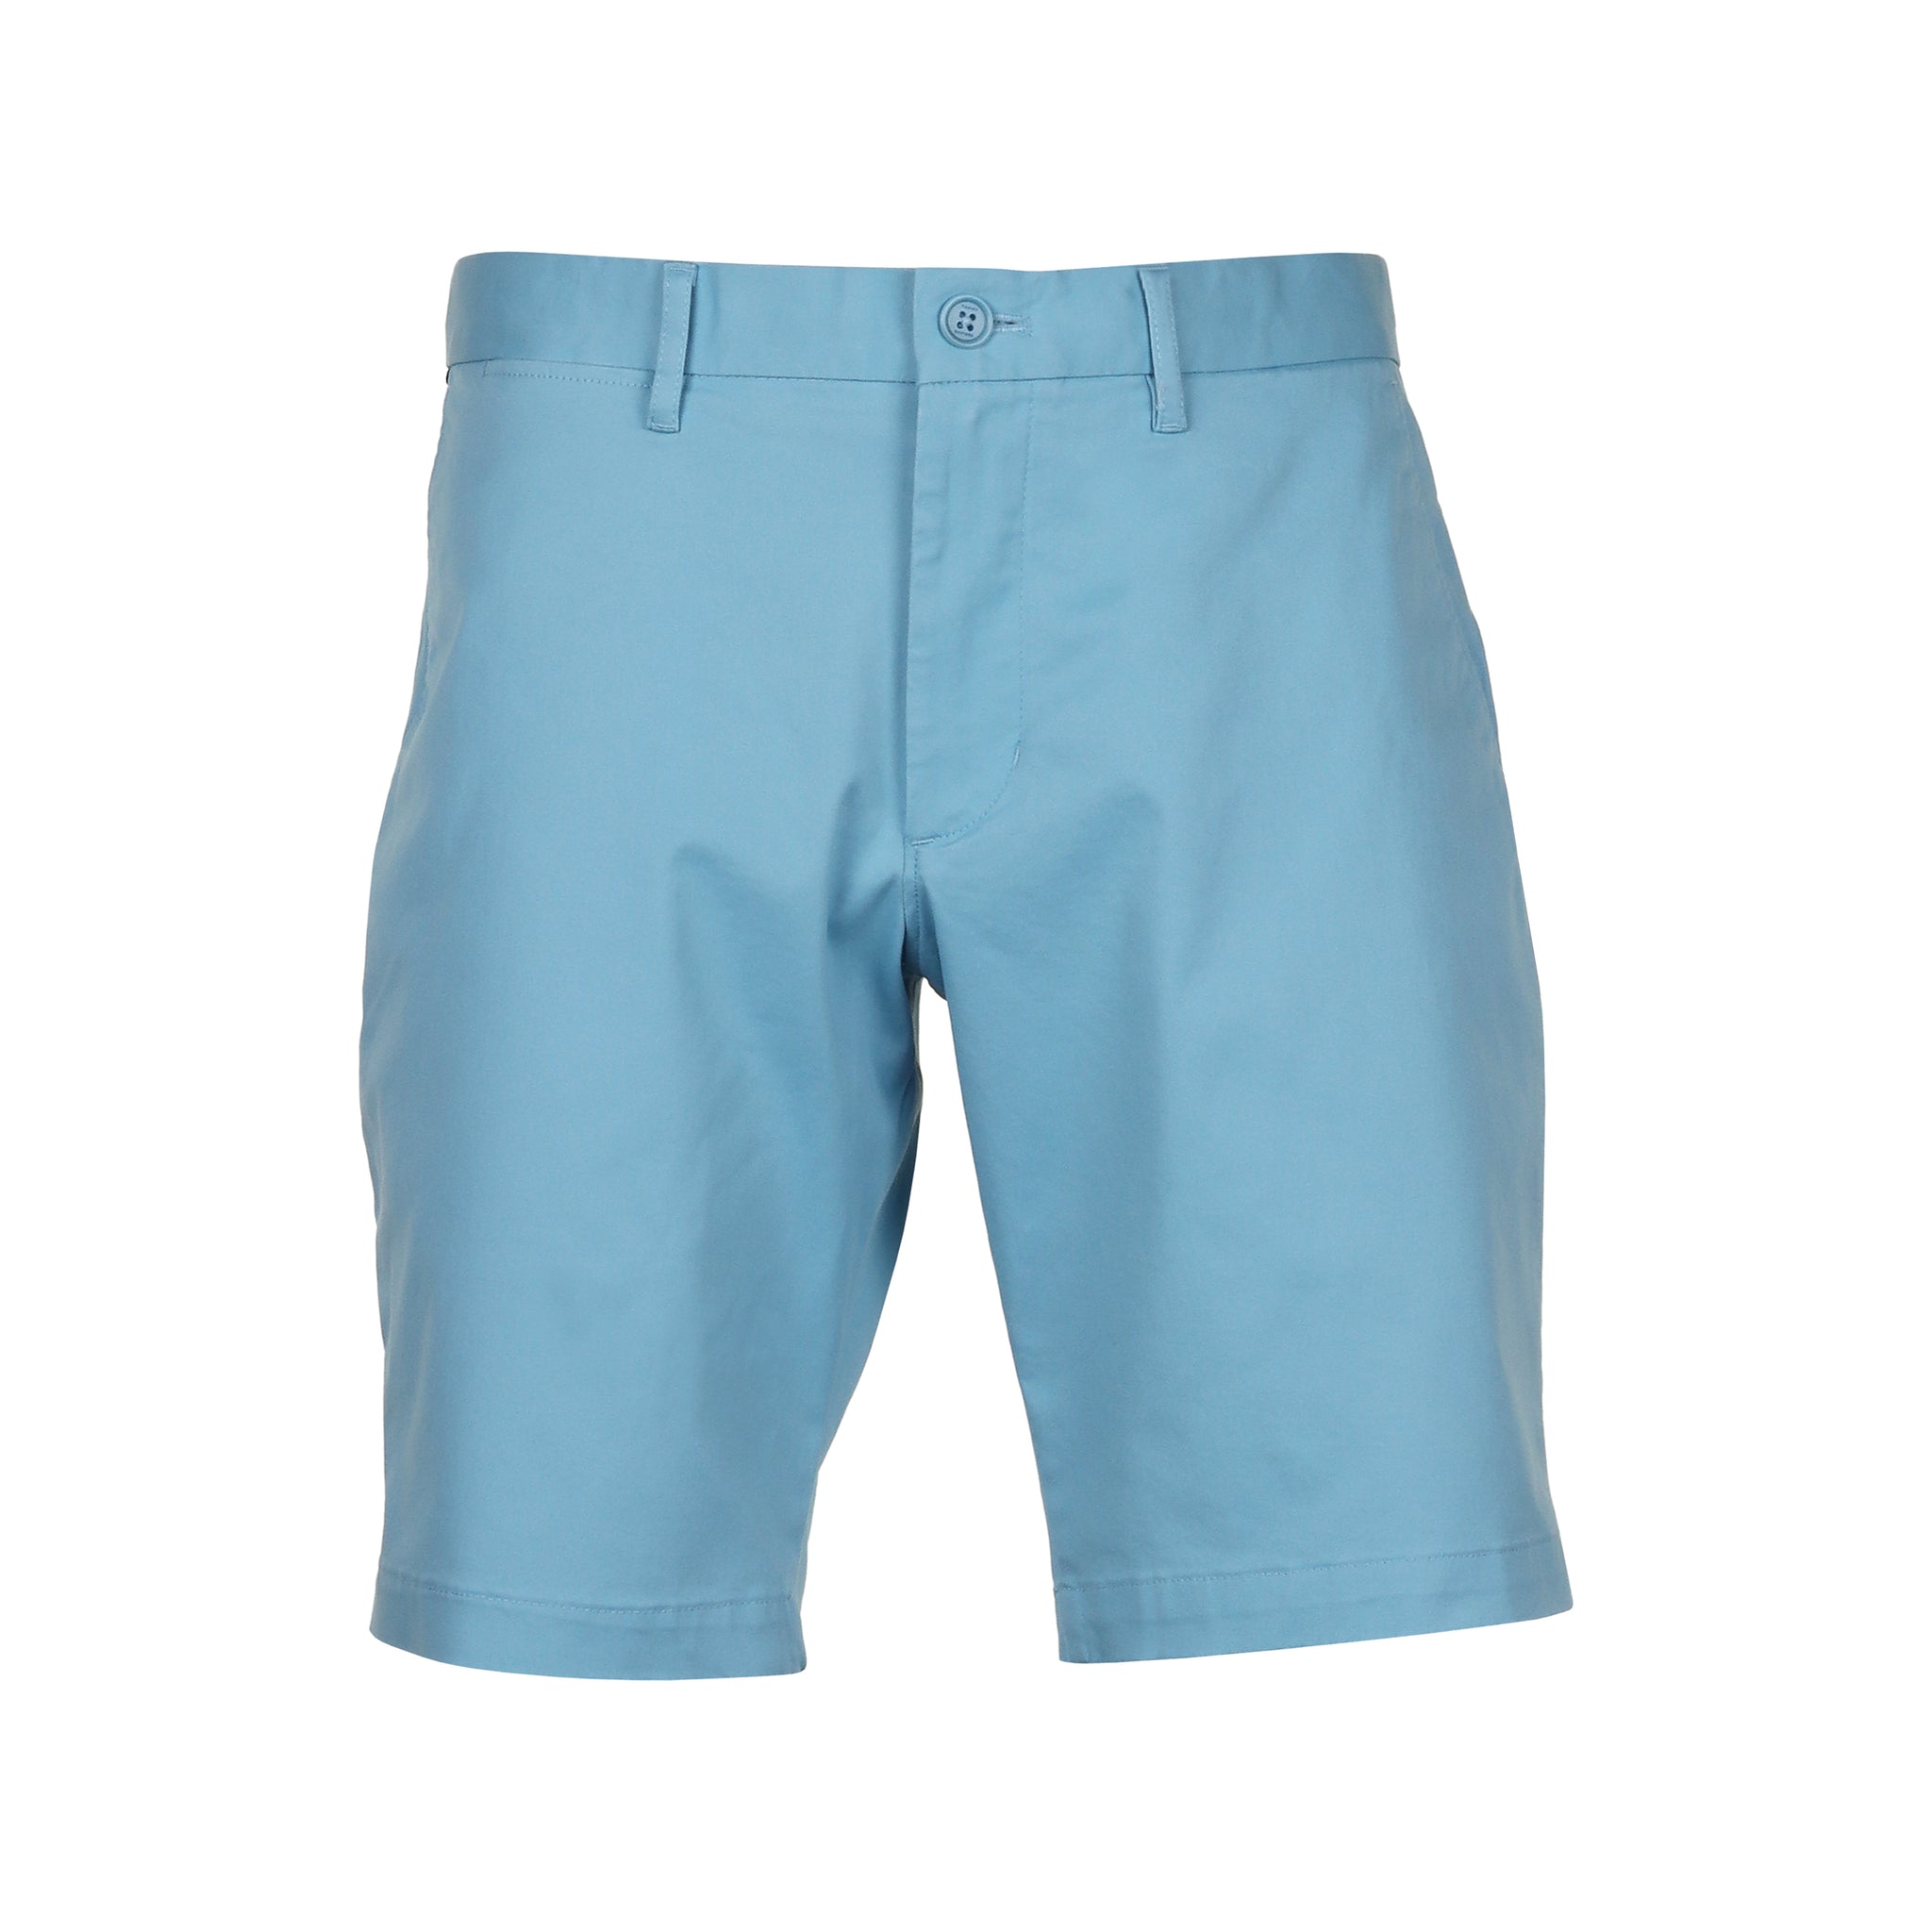 tommy-hilfiger-brooklyn-1985-cotton-shorts-mw0mw23563-sleepy-blue-cyw-function18